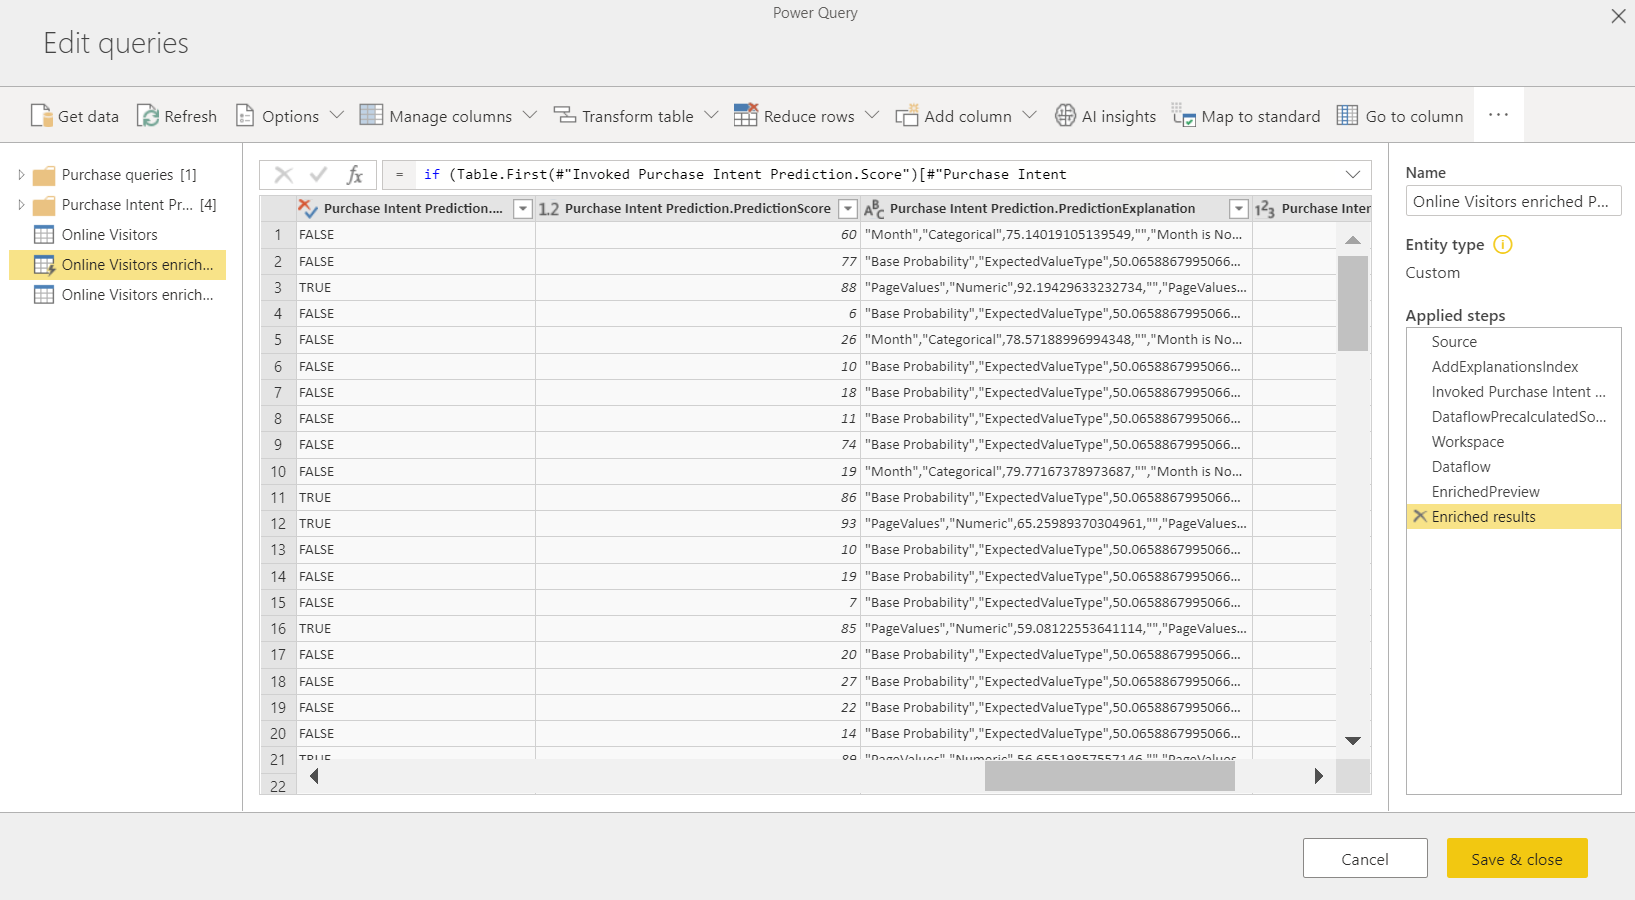 Az AutoML-eredményeket megjelenítő Power Query képernyőképe.